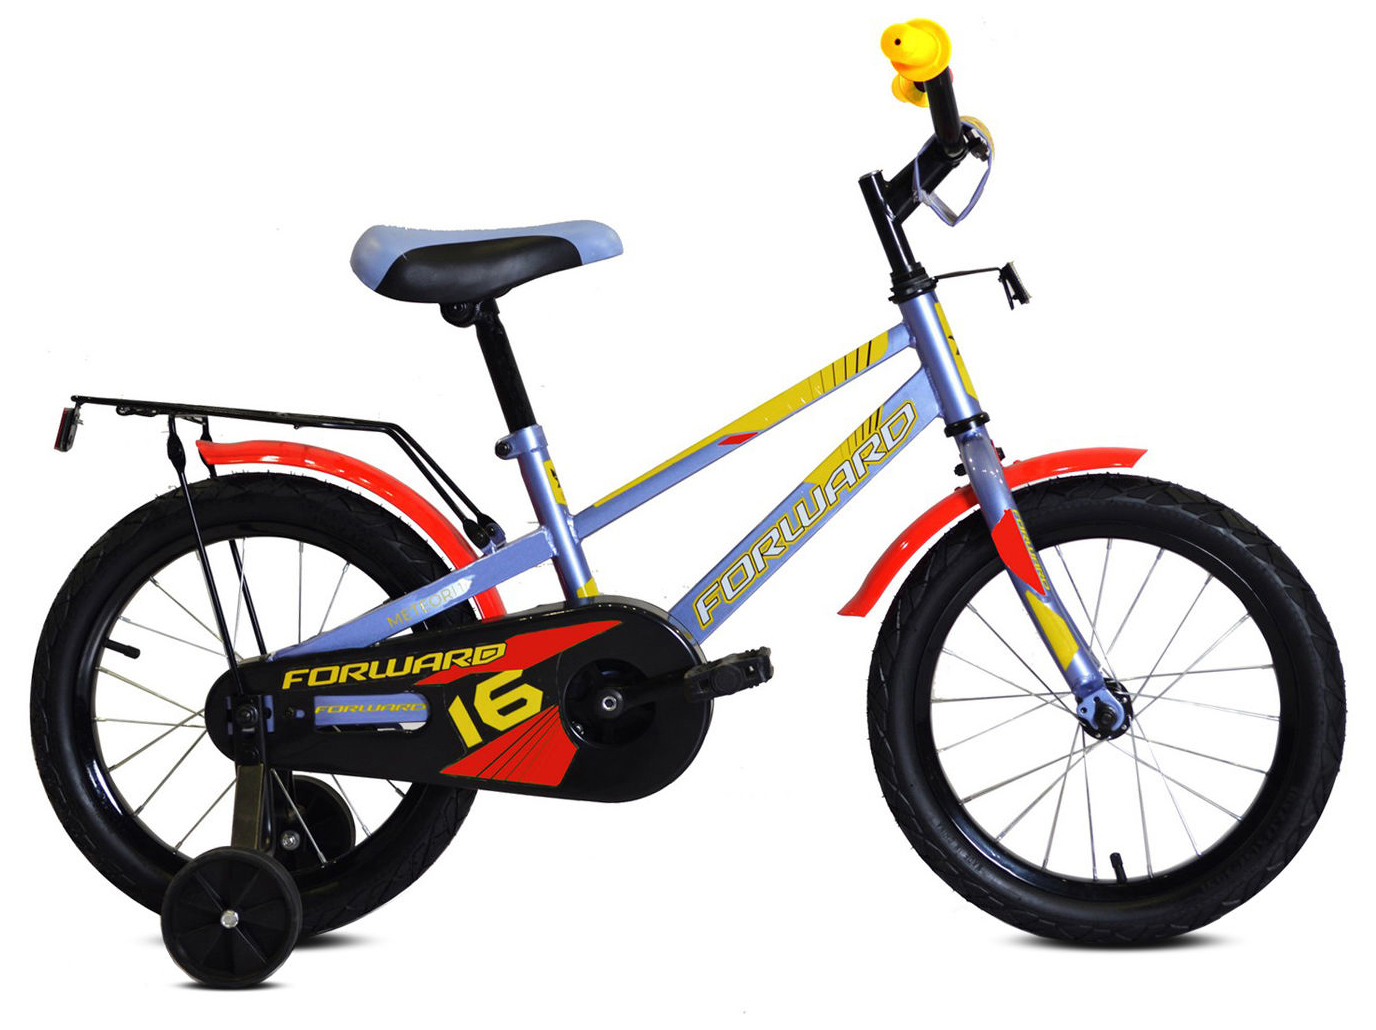  Отзывы о Детском велосипеде Forward Meteor 12 2020